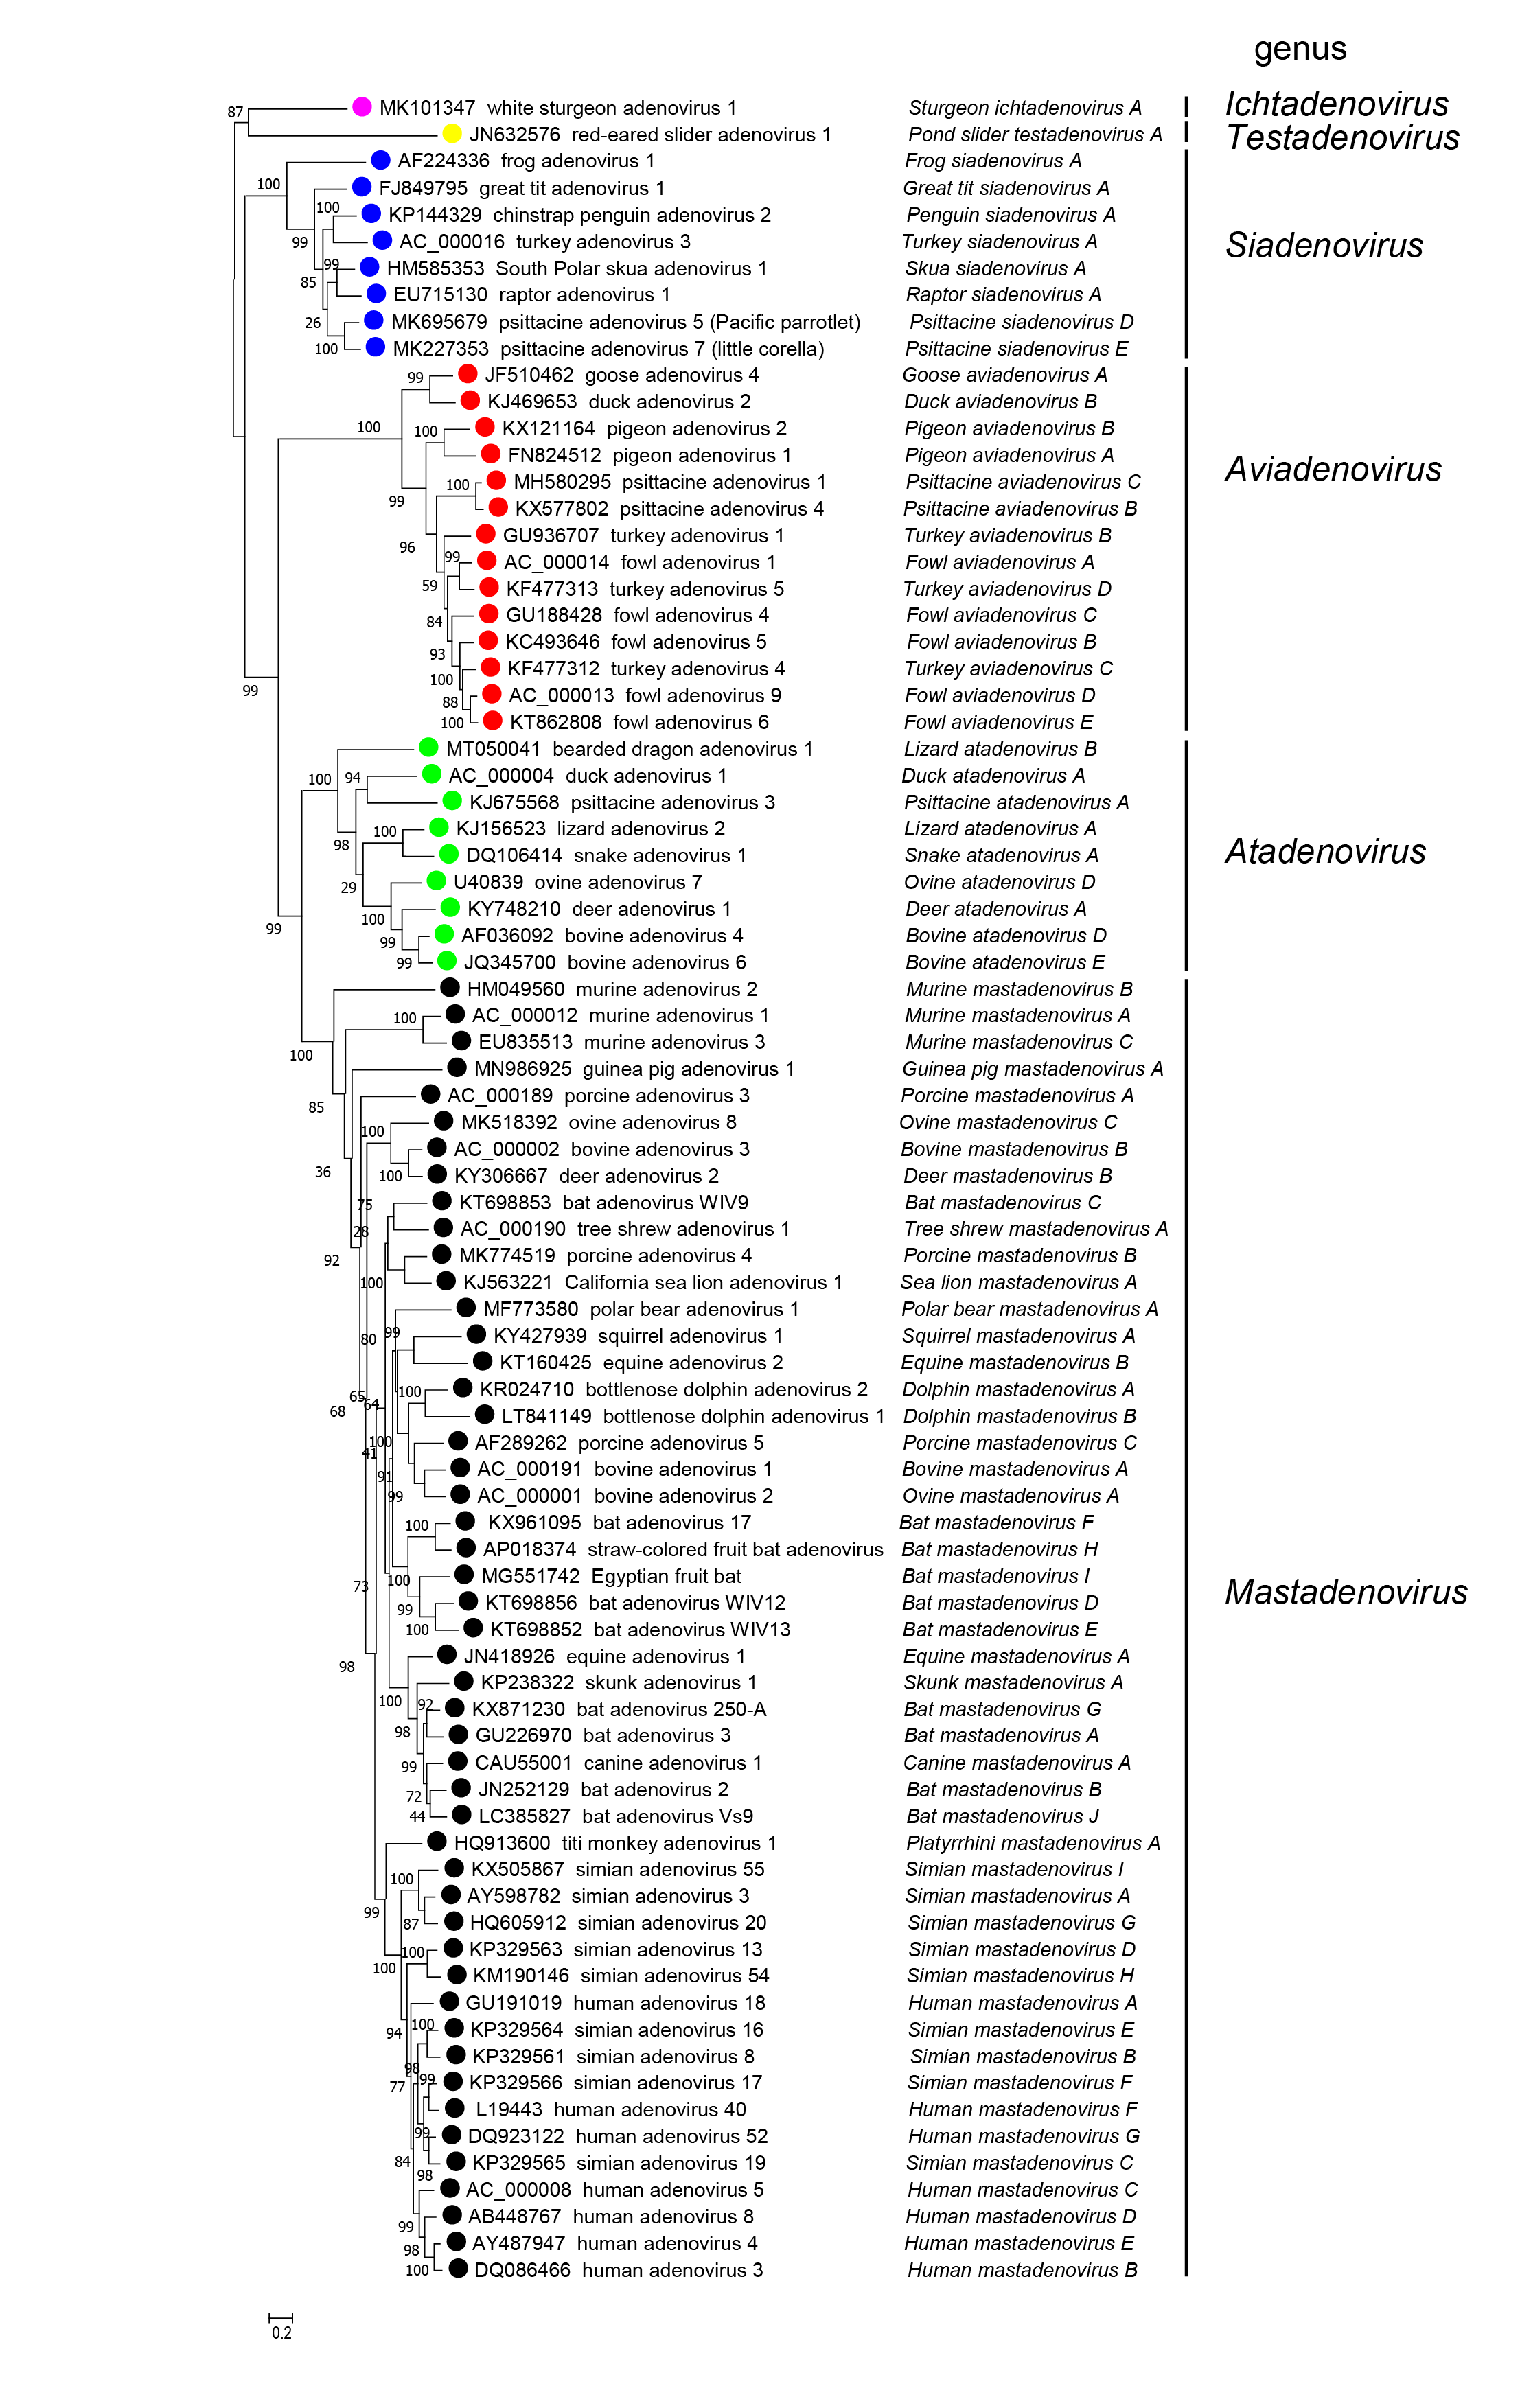 Adenonoviridae Phylogeny